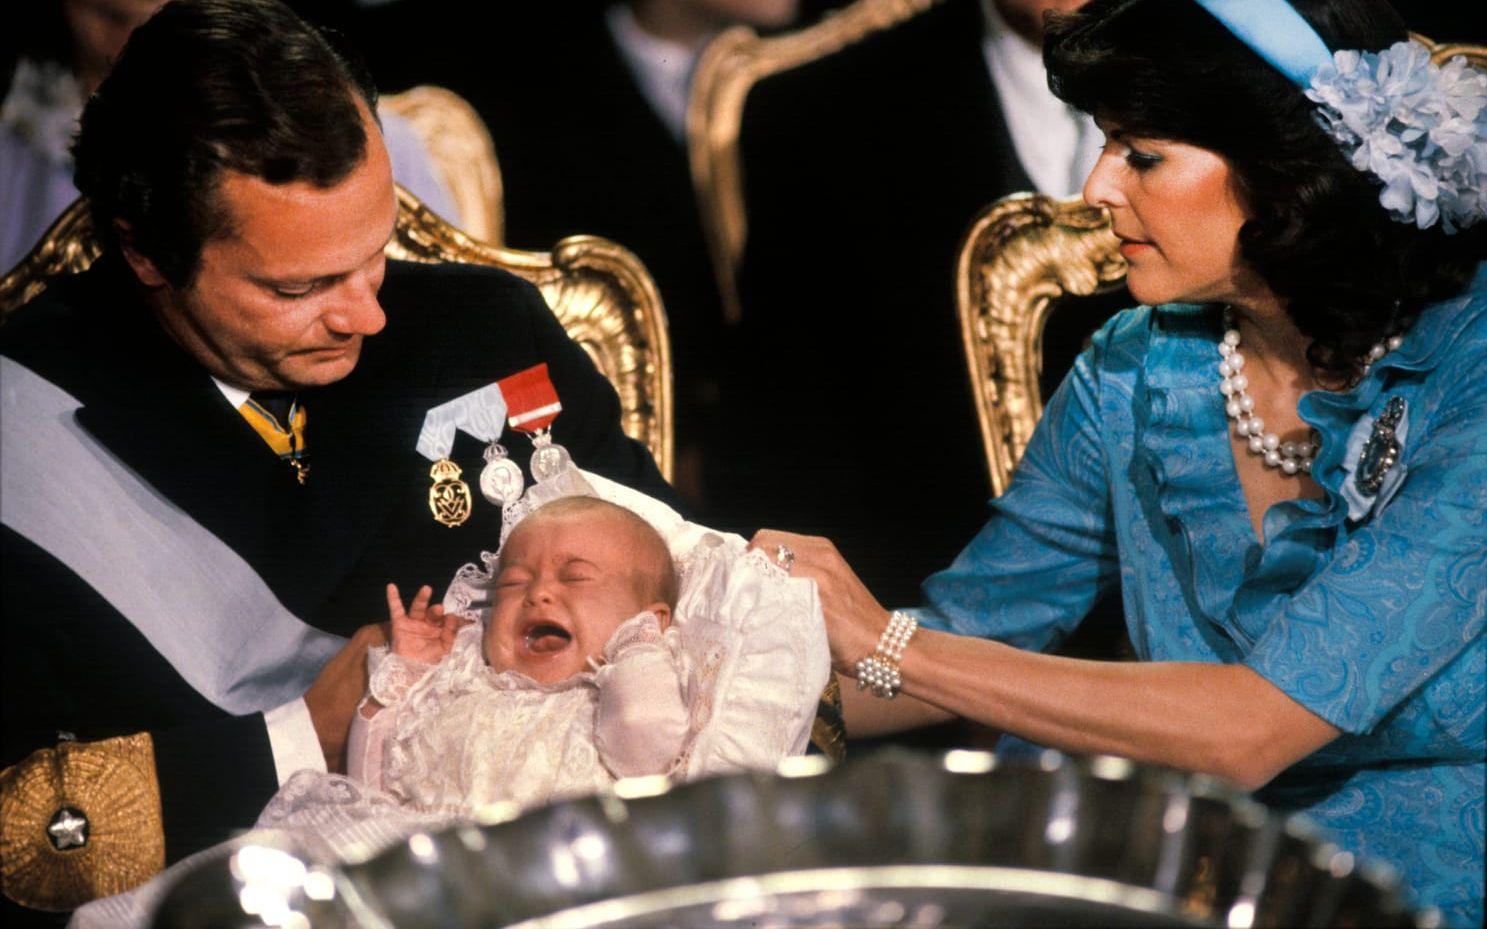 1982: Prinsessan Madeleine gråter i sin far kung Carl XVI Gustafs famn under sitt dop i Slottskyrkan 31 augusti.